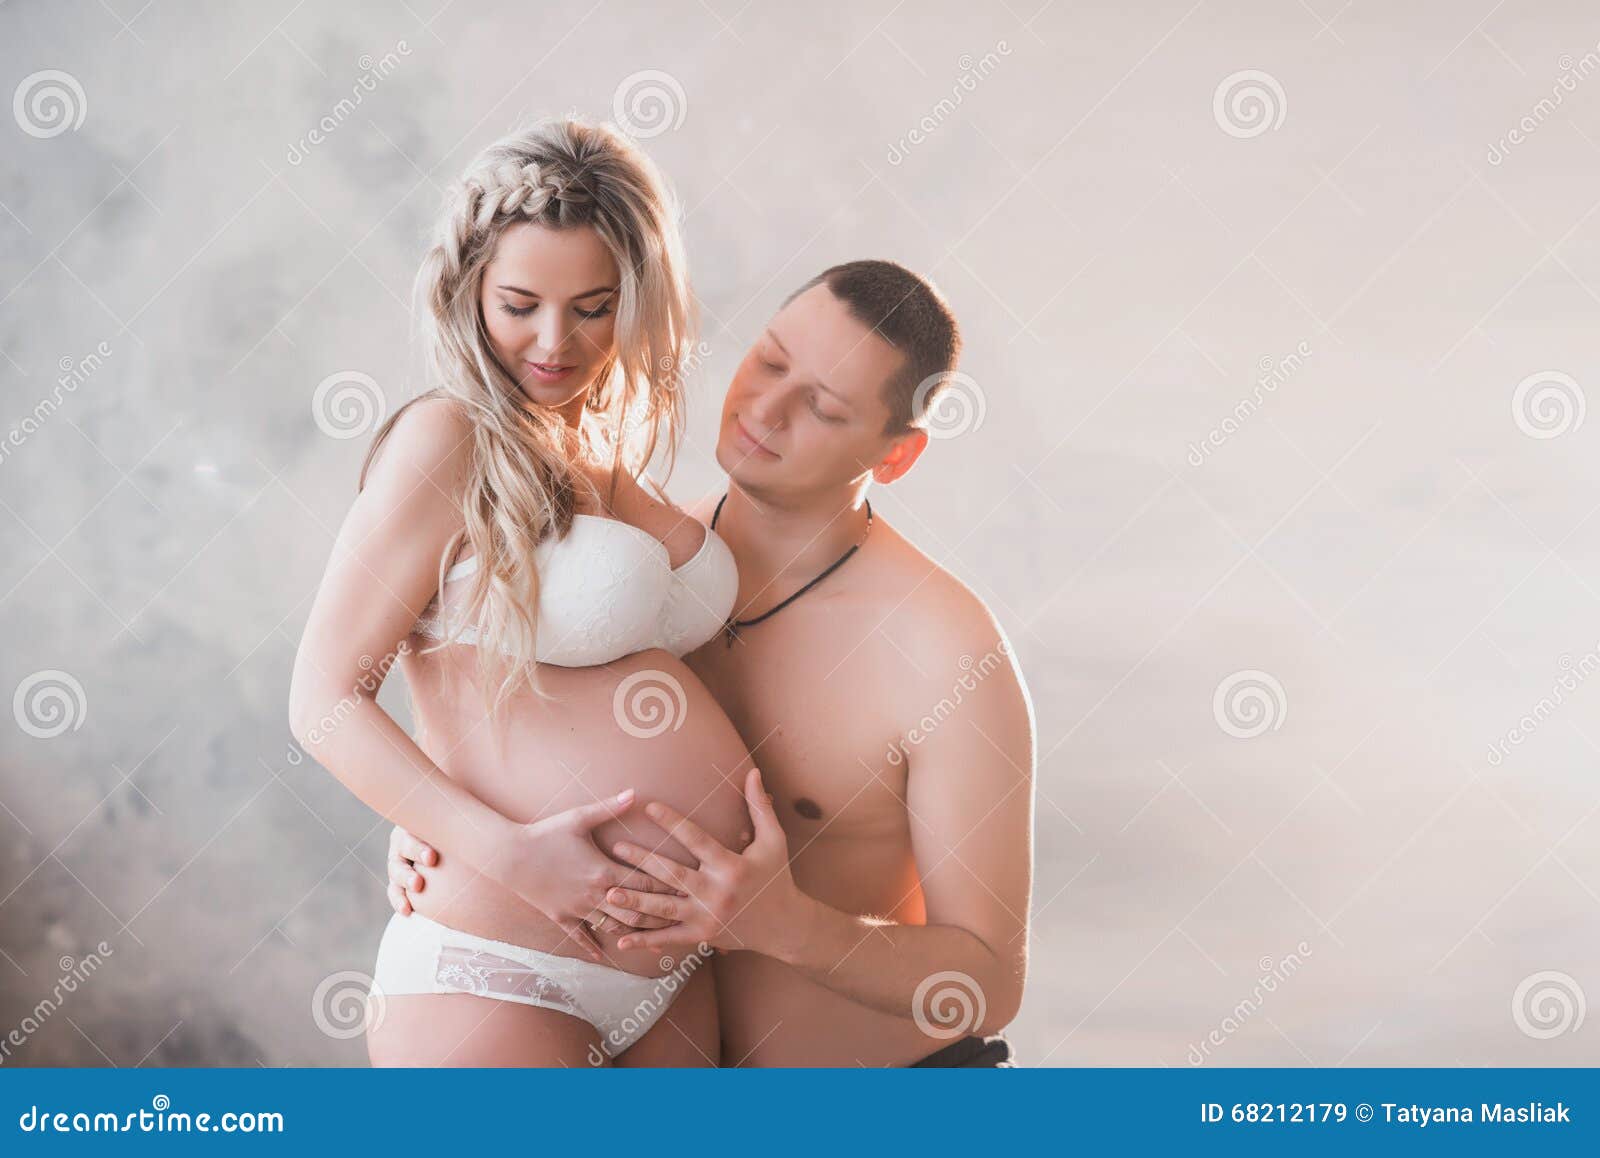 фотосессия беременных голые с мужем фото 37